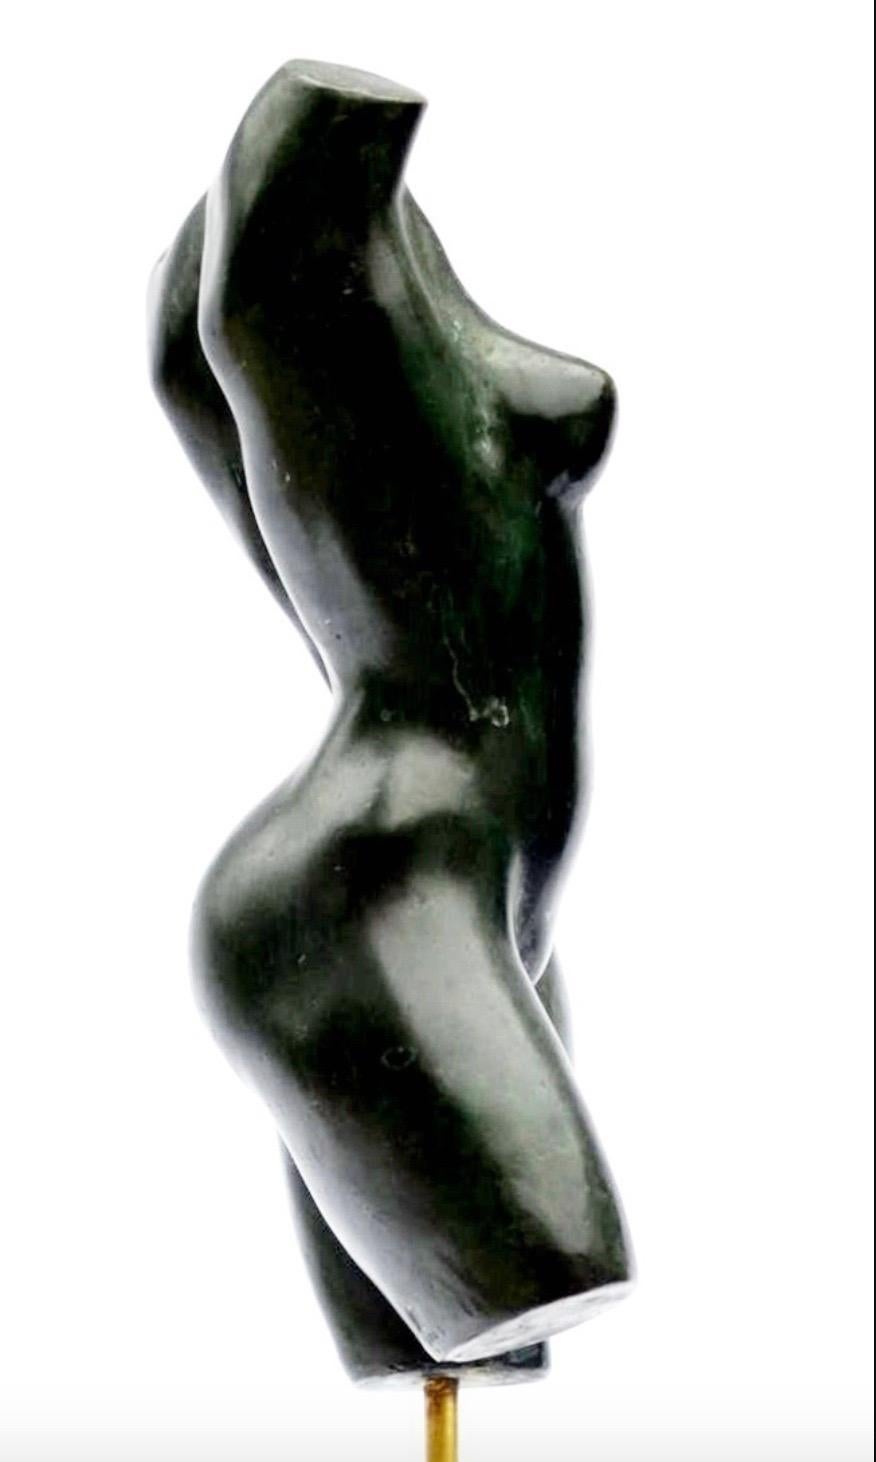 Caroline's Torso by Yann Guillon - Nude Bronze Sculpture, Female Torso 2